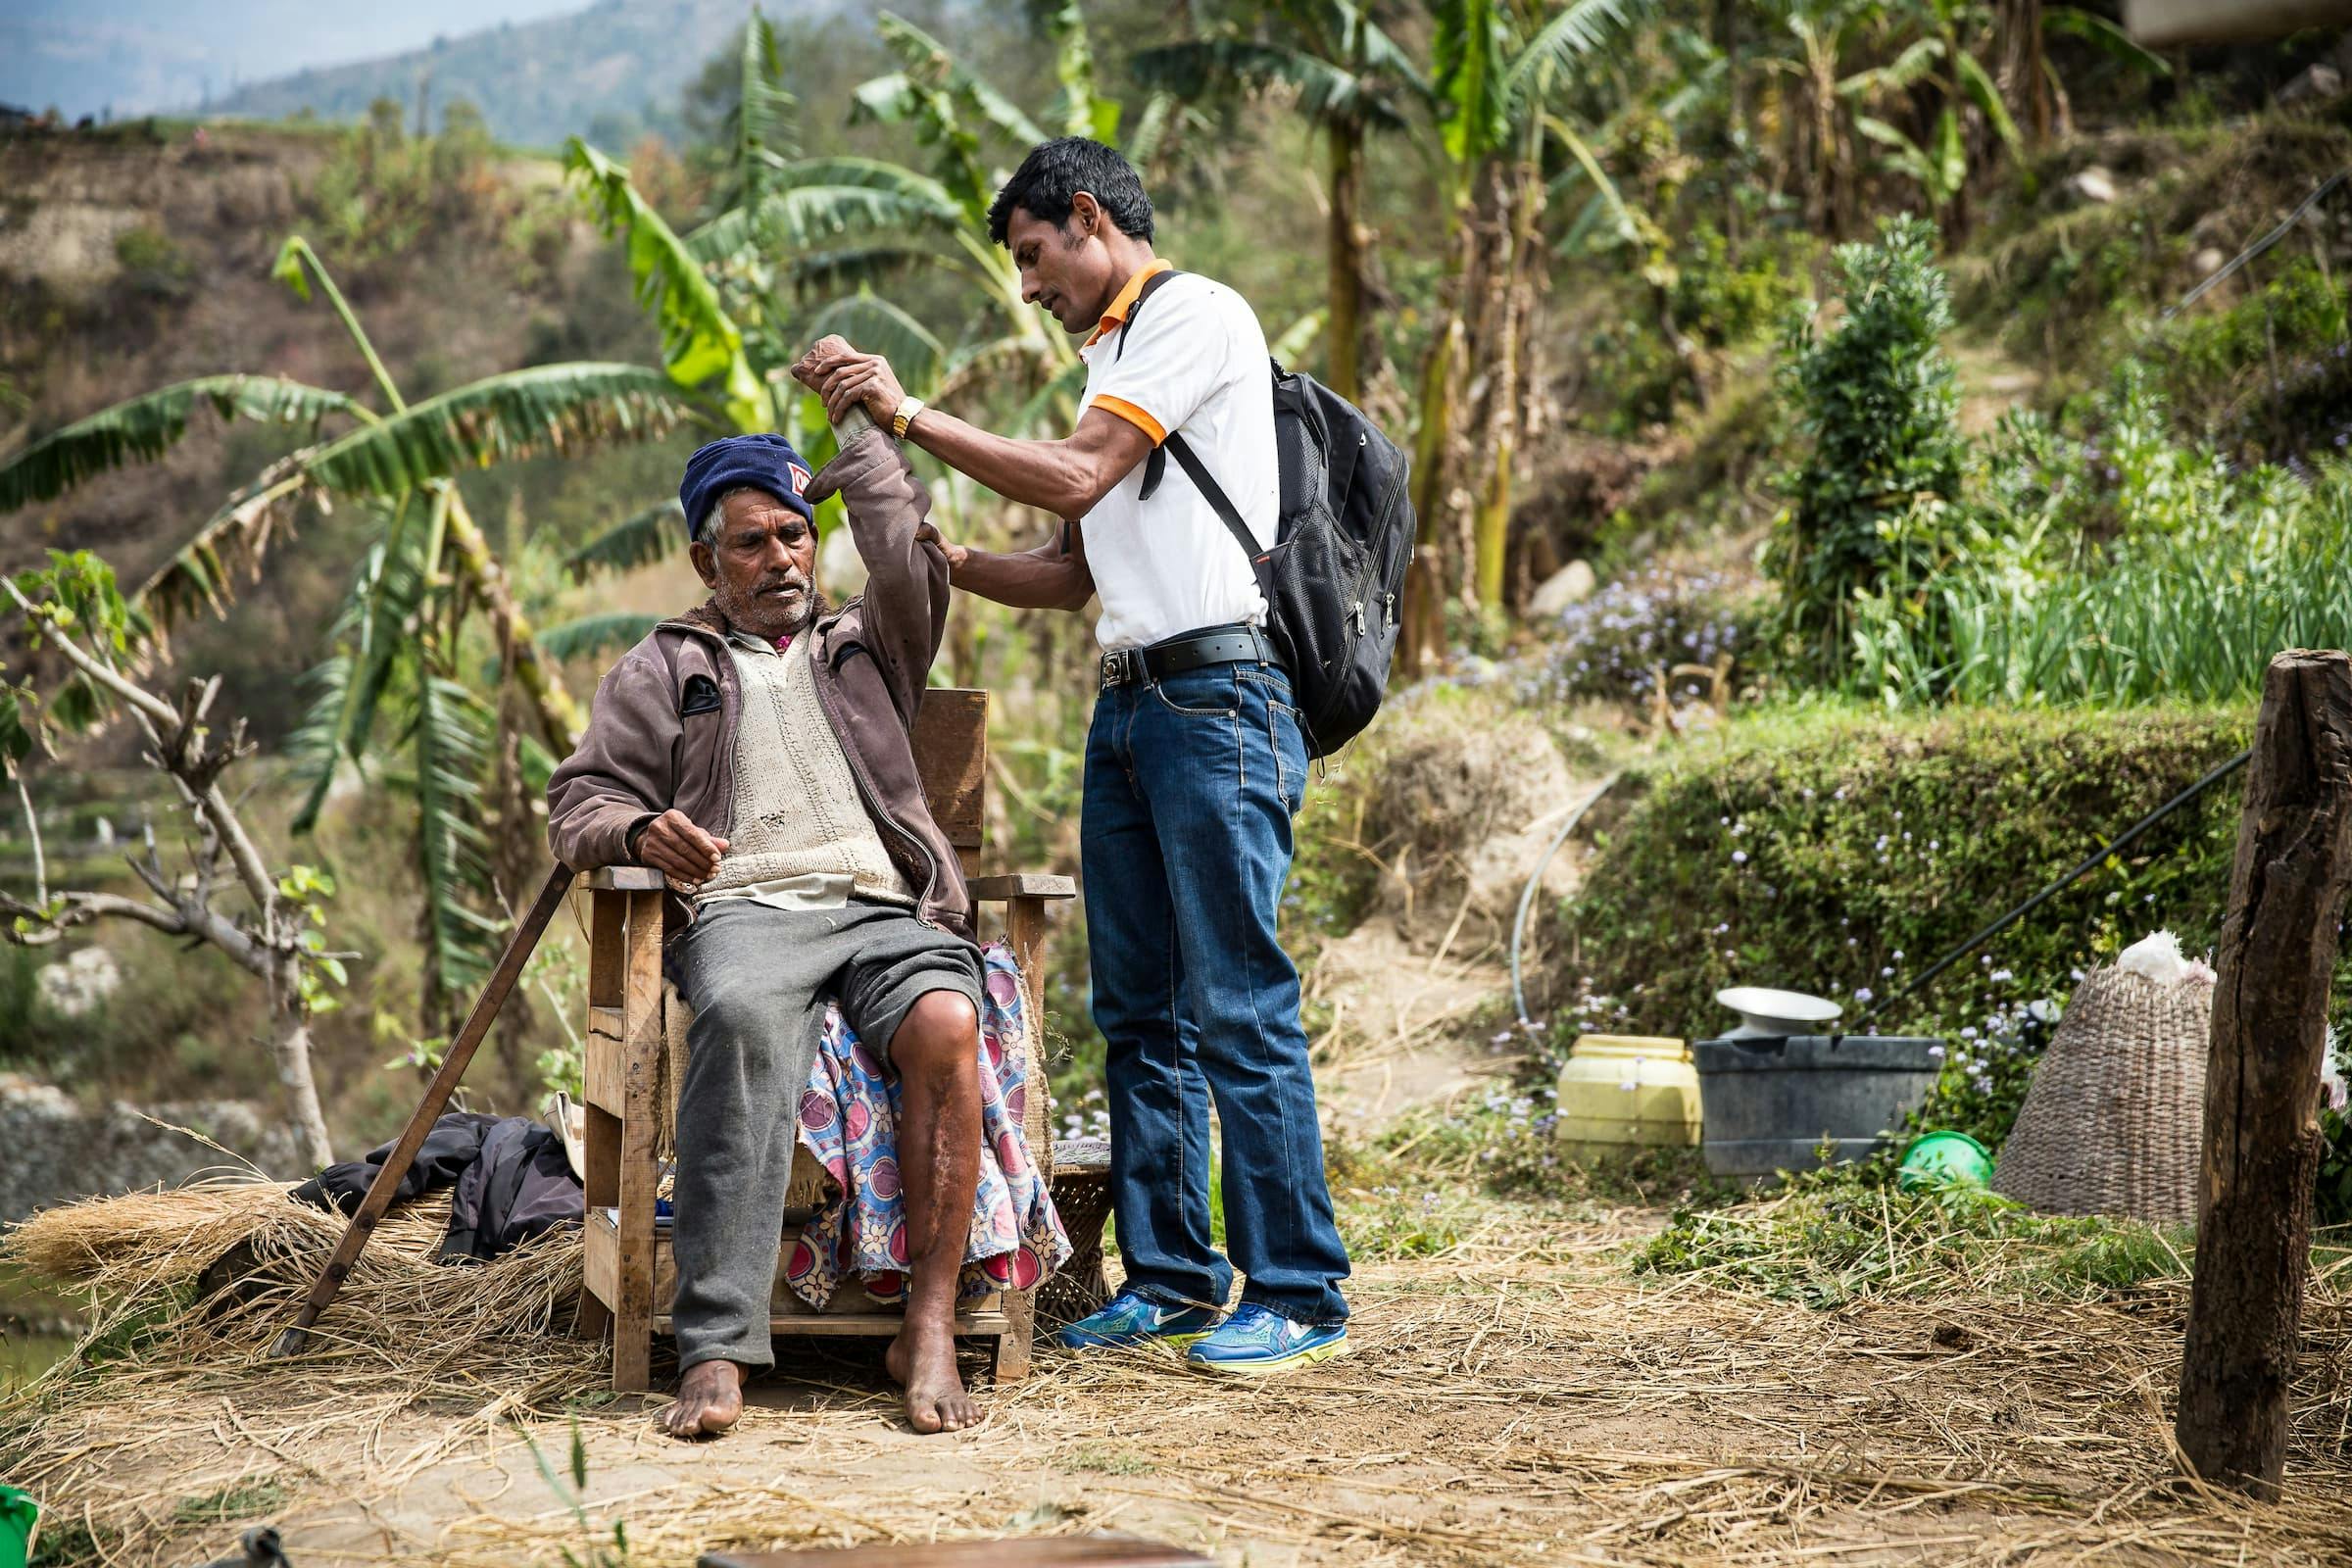 Un jeune collaborateur de FAIRMED tend le bras d'un vieil homme pour voir si sa lèpre affecte sa mobilité. Le vieil homme est assis sur une chaise en plein air. En arrière-plan, on aperçoit des palmiers et des arbres. La scène se déroule dans l'Inde rurale.